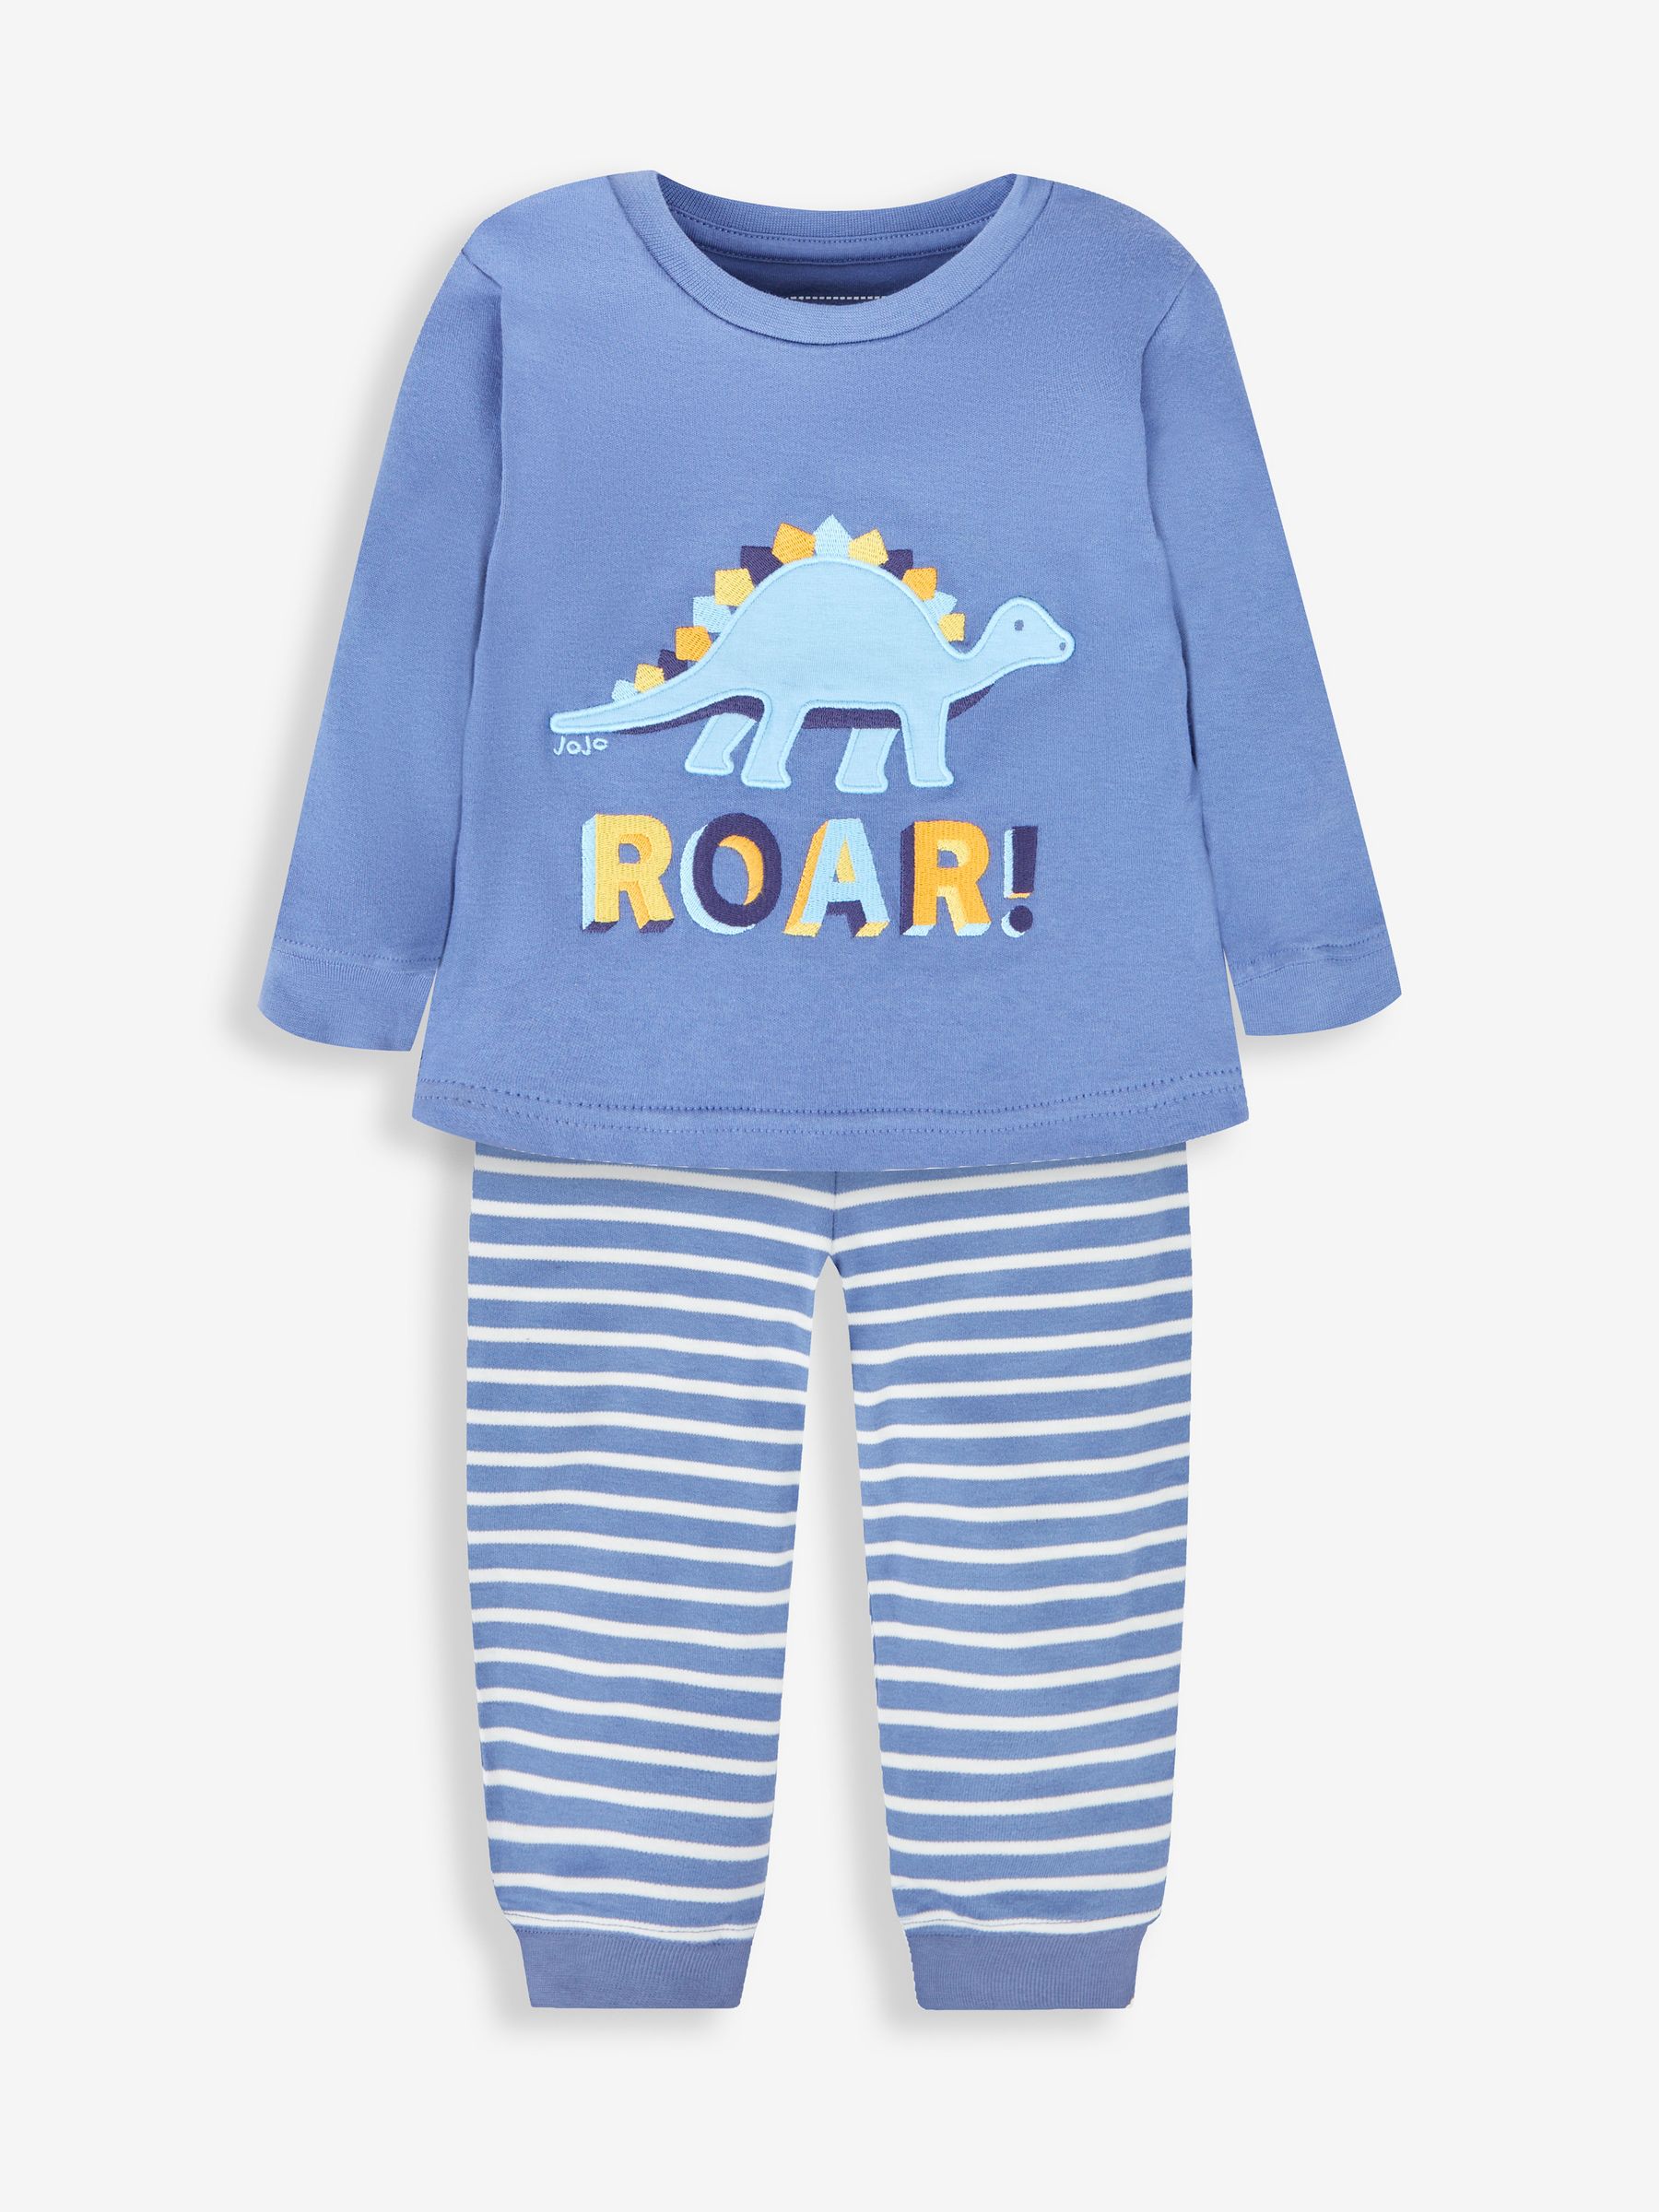 Buy Blue Boys' Dinosaur Jersey Pyjamas from the JoJo Maman Bébé UK ...